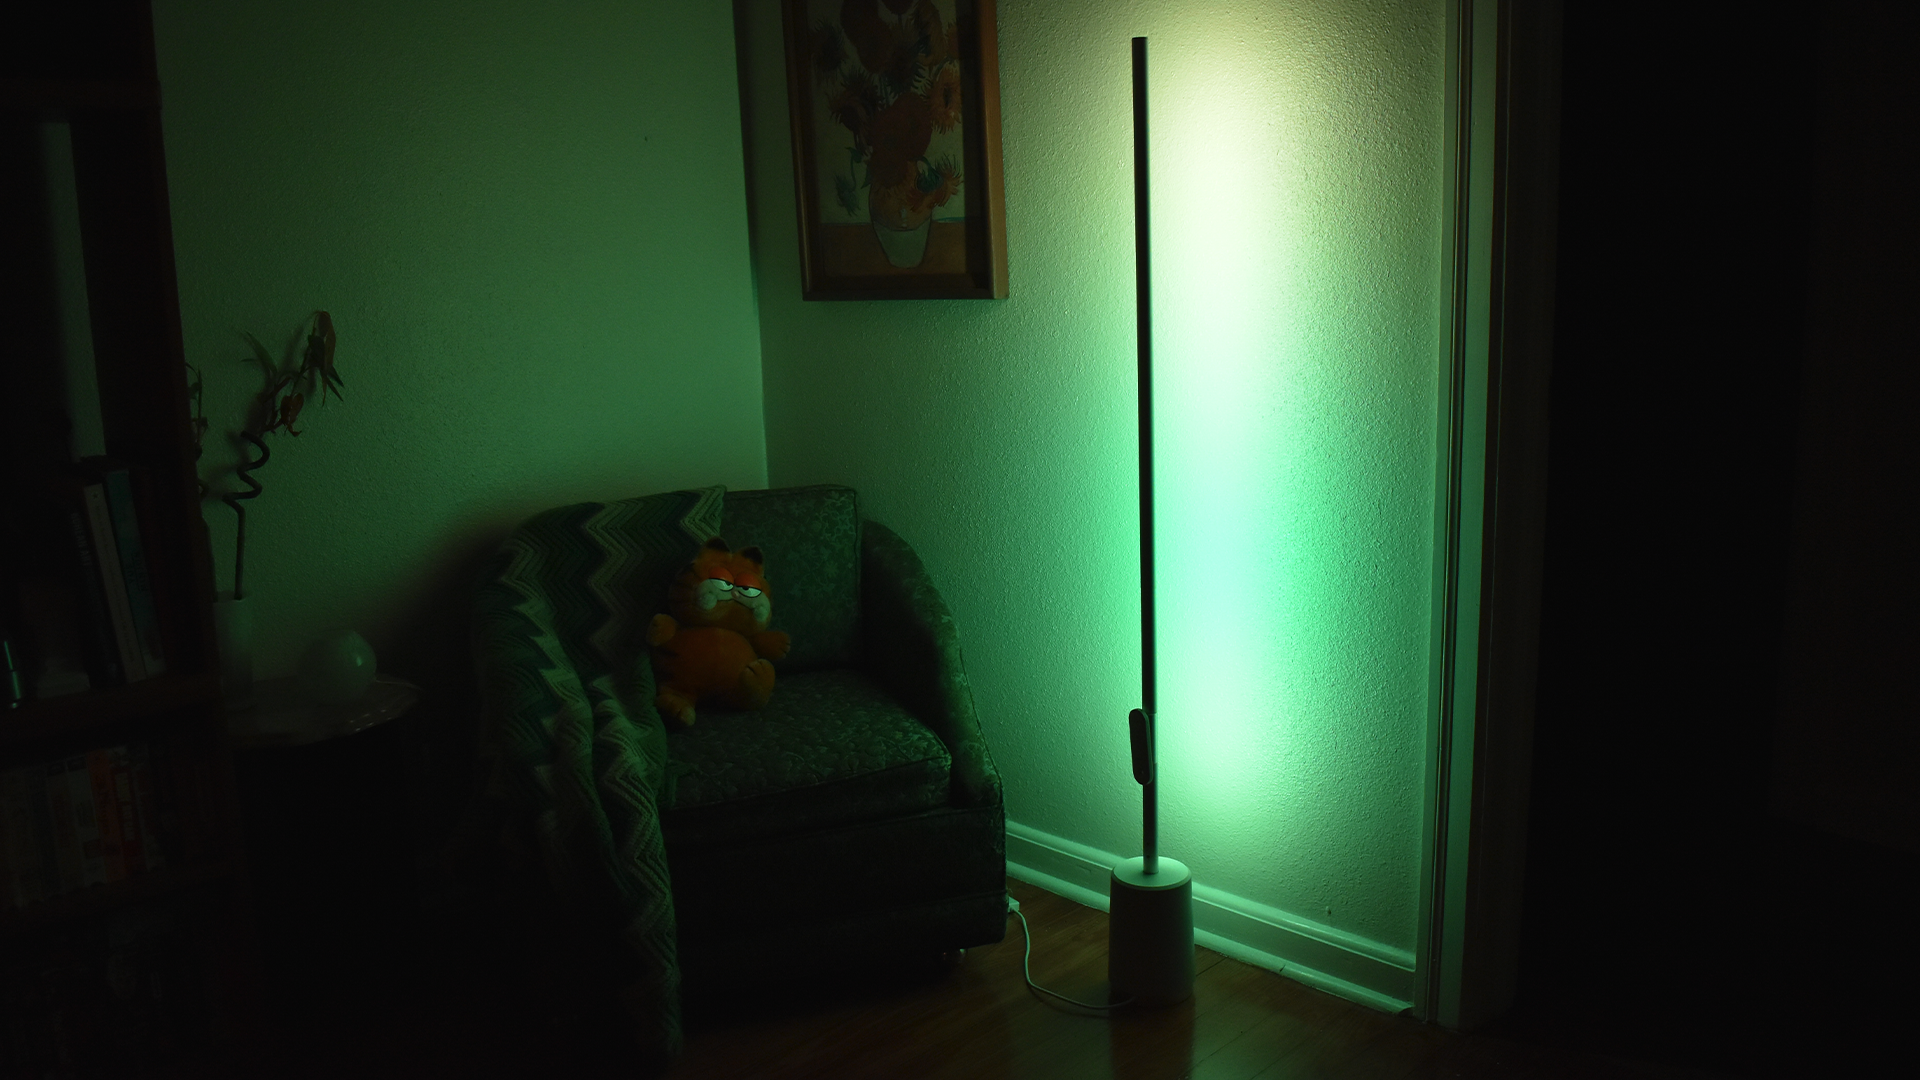 Lampu Lyra memancarkan cahaya hijau dan kuning.